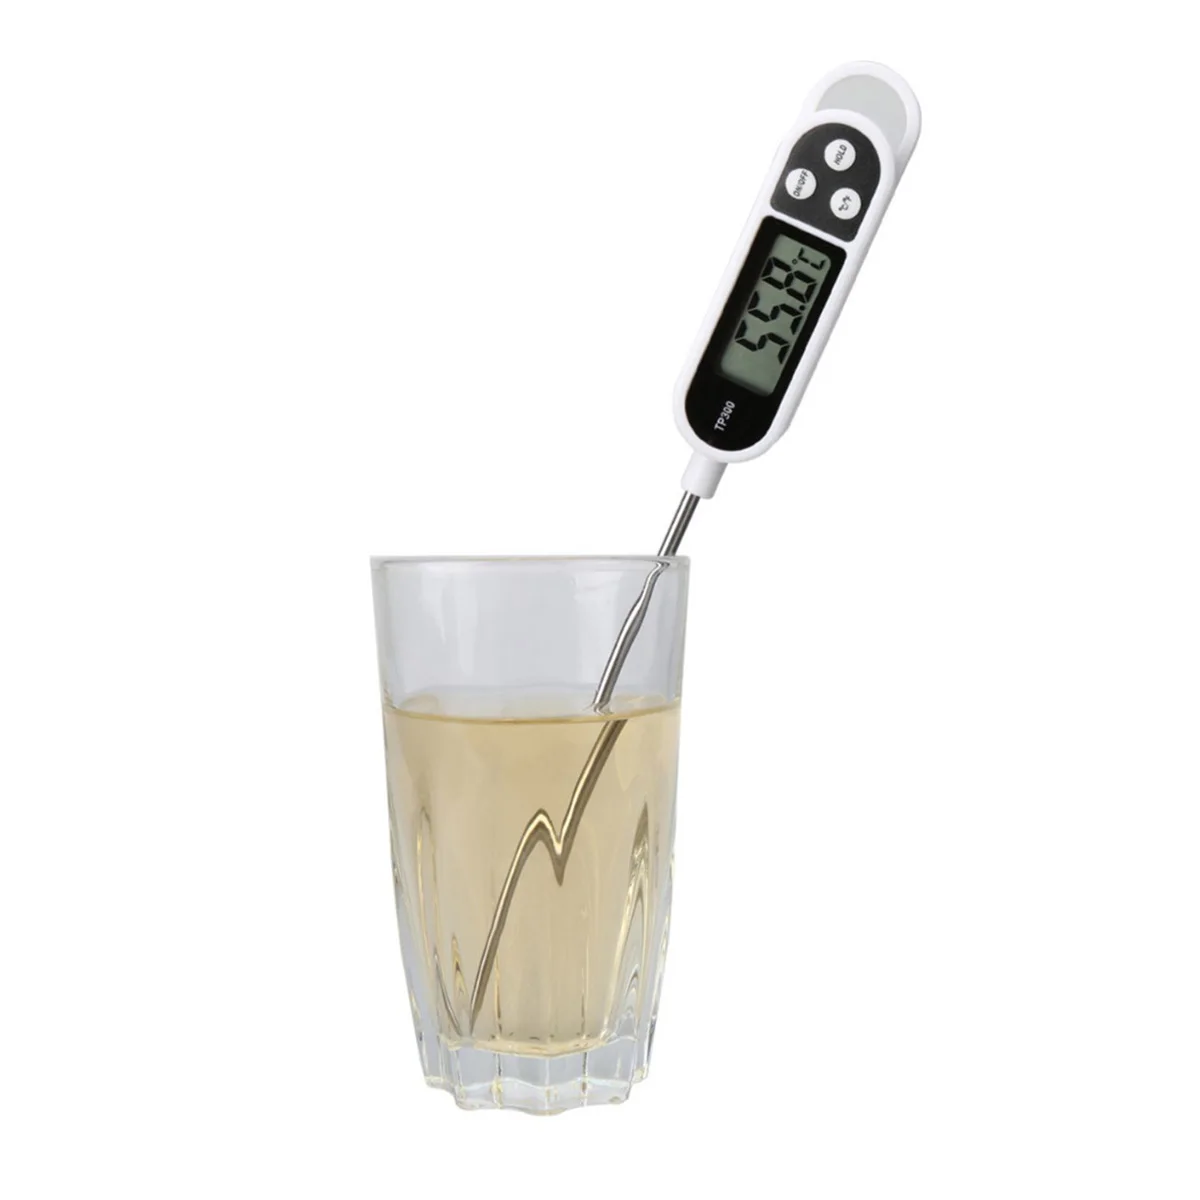 Барбекю Термометры цифровые для проверки мяса водонепроницаемое мгновенное считывание калибровки подсветка Кухня из нержавеющей стали вода молоко инструменты